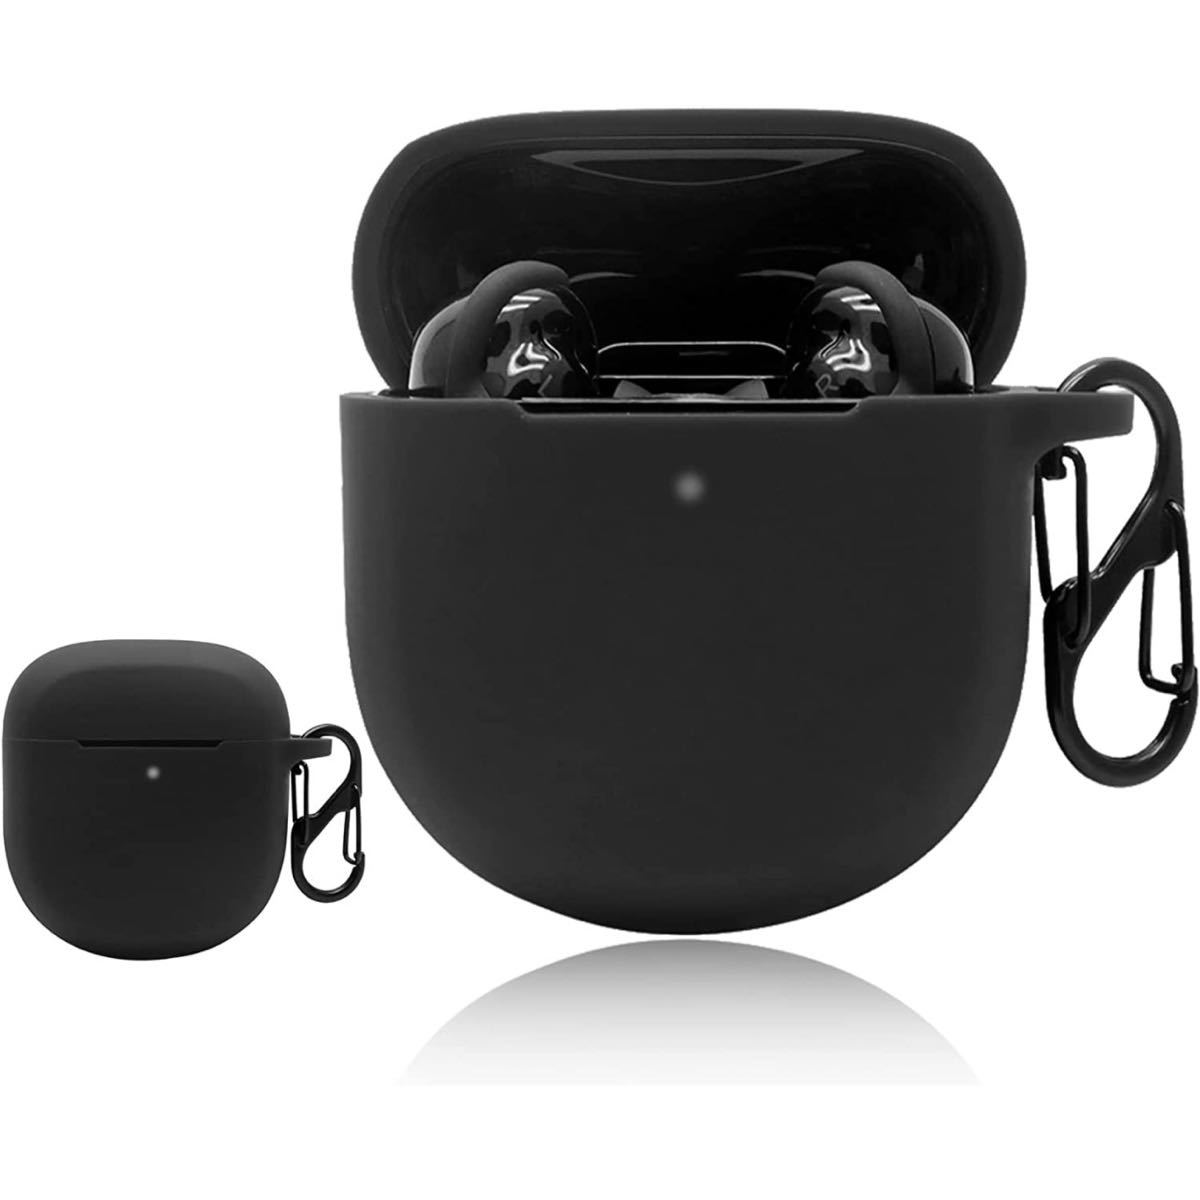 Bose QuietComfort Earbuds II オークション比較 - 価格.com